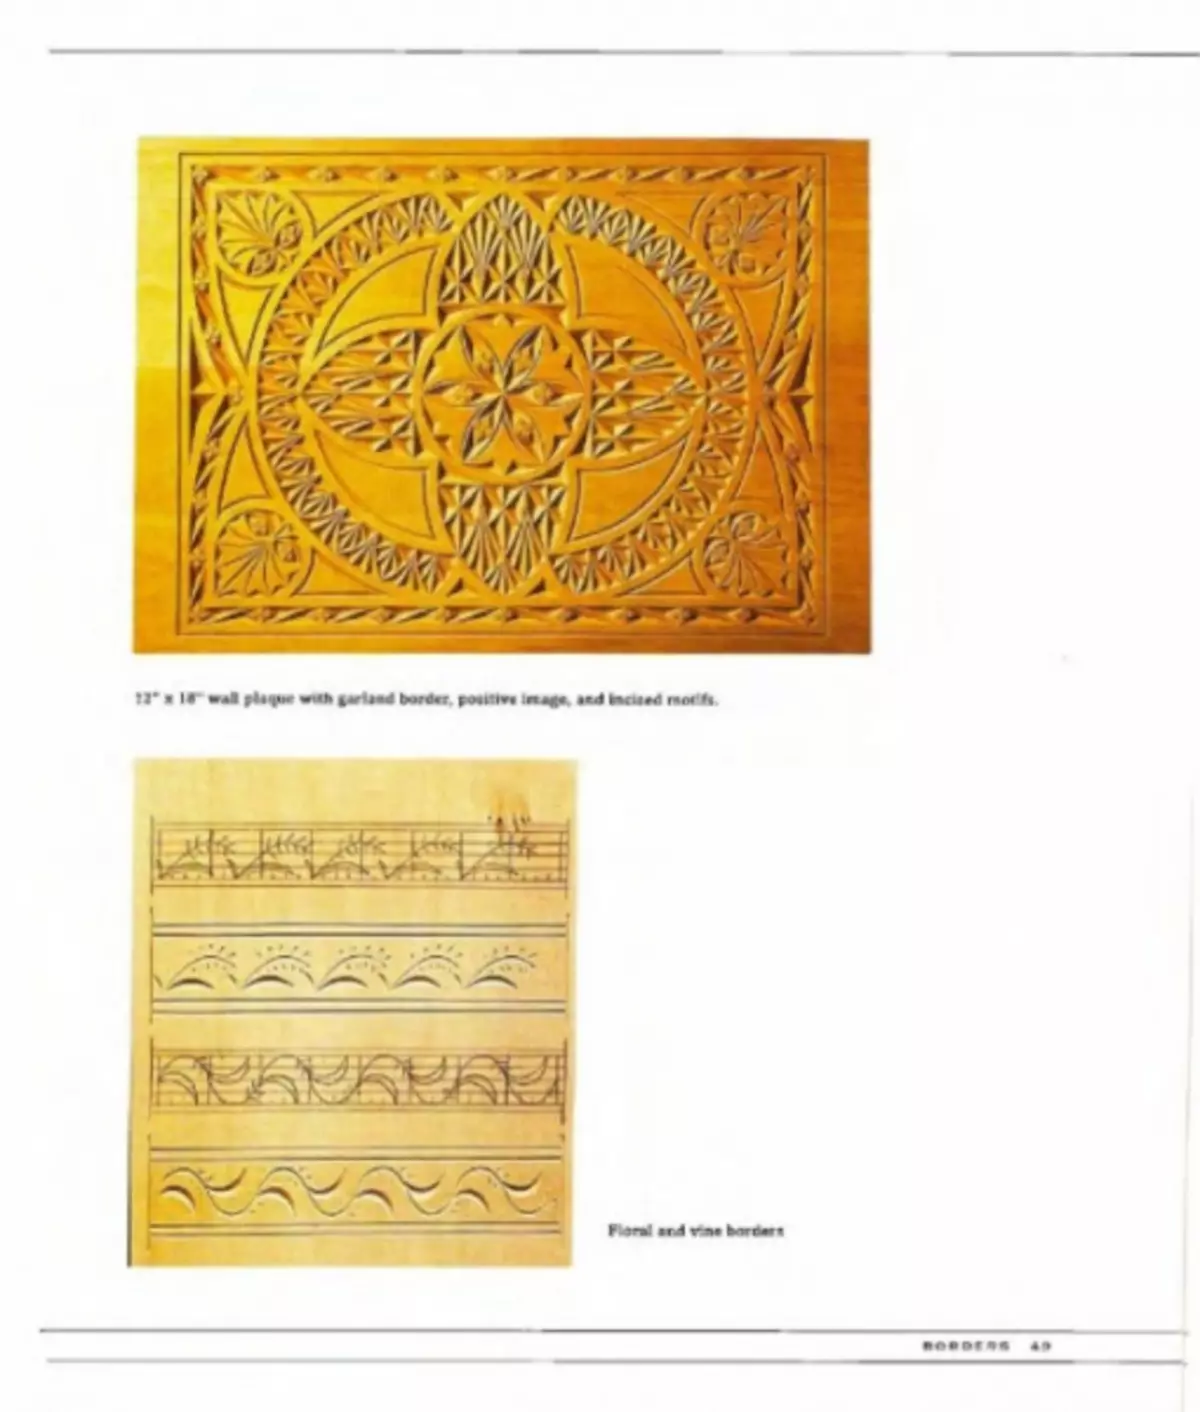 மர நூல் வரைபடங்கள் - 100 க்கும் மேற்பட்ட ஓவியங்கள்